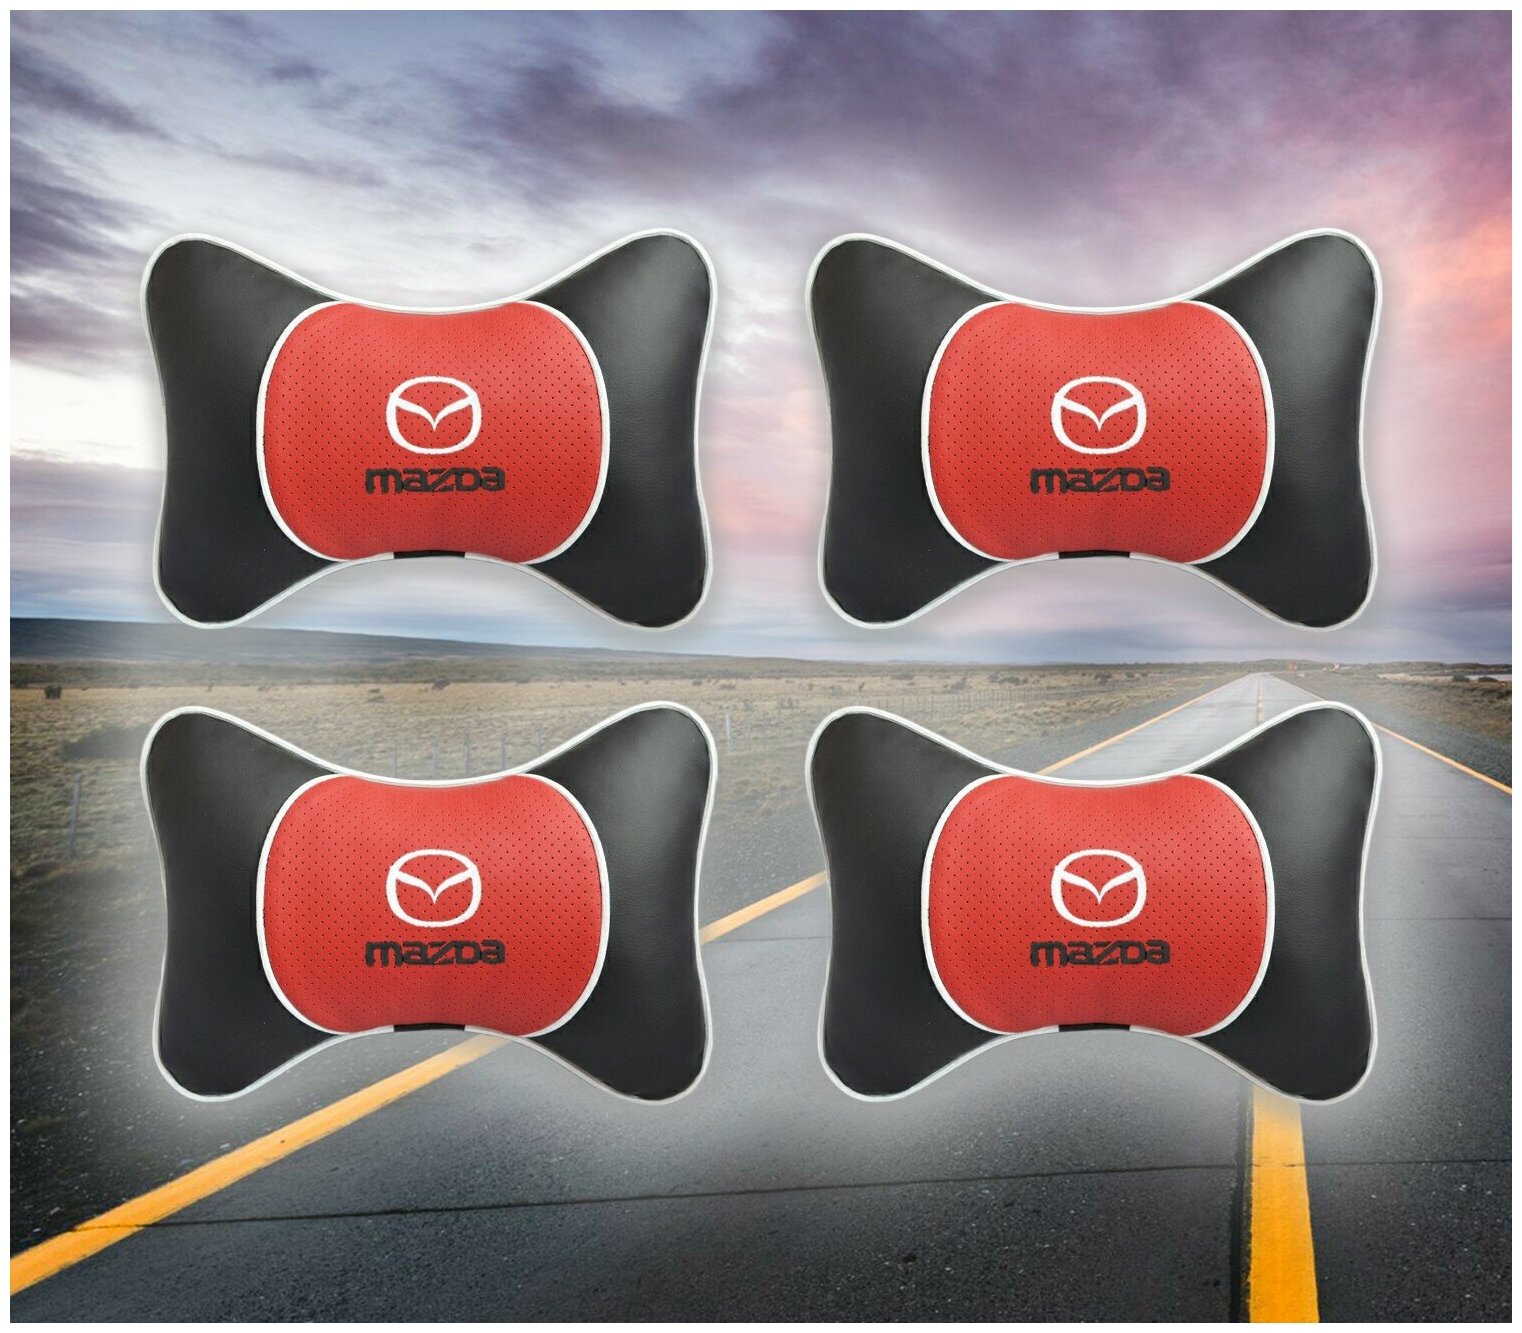 Комплект автомобильных подушек под шею на подголовник с вставкой из красной экокожи и вышивкой для Mazda (мазда) (4 подушки)